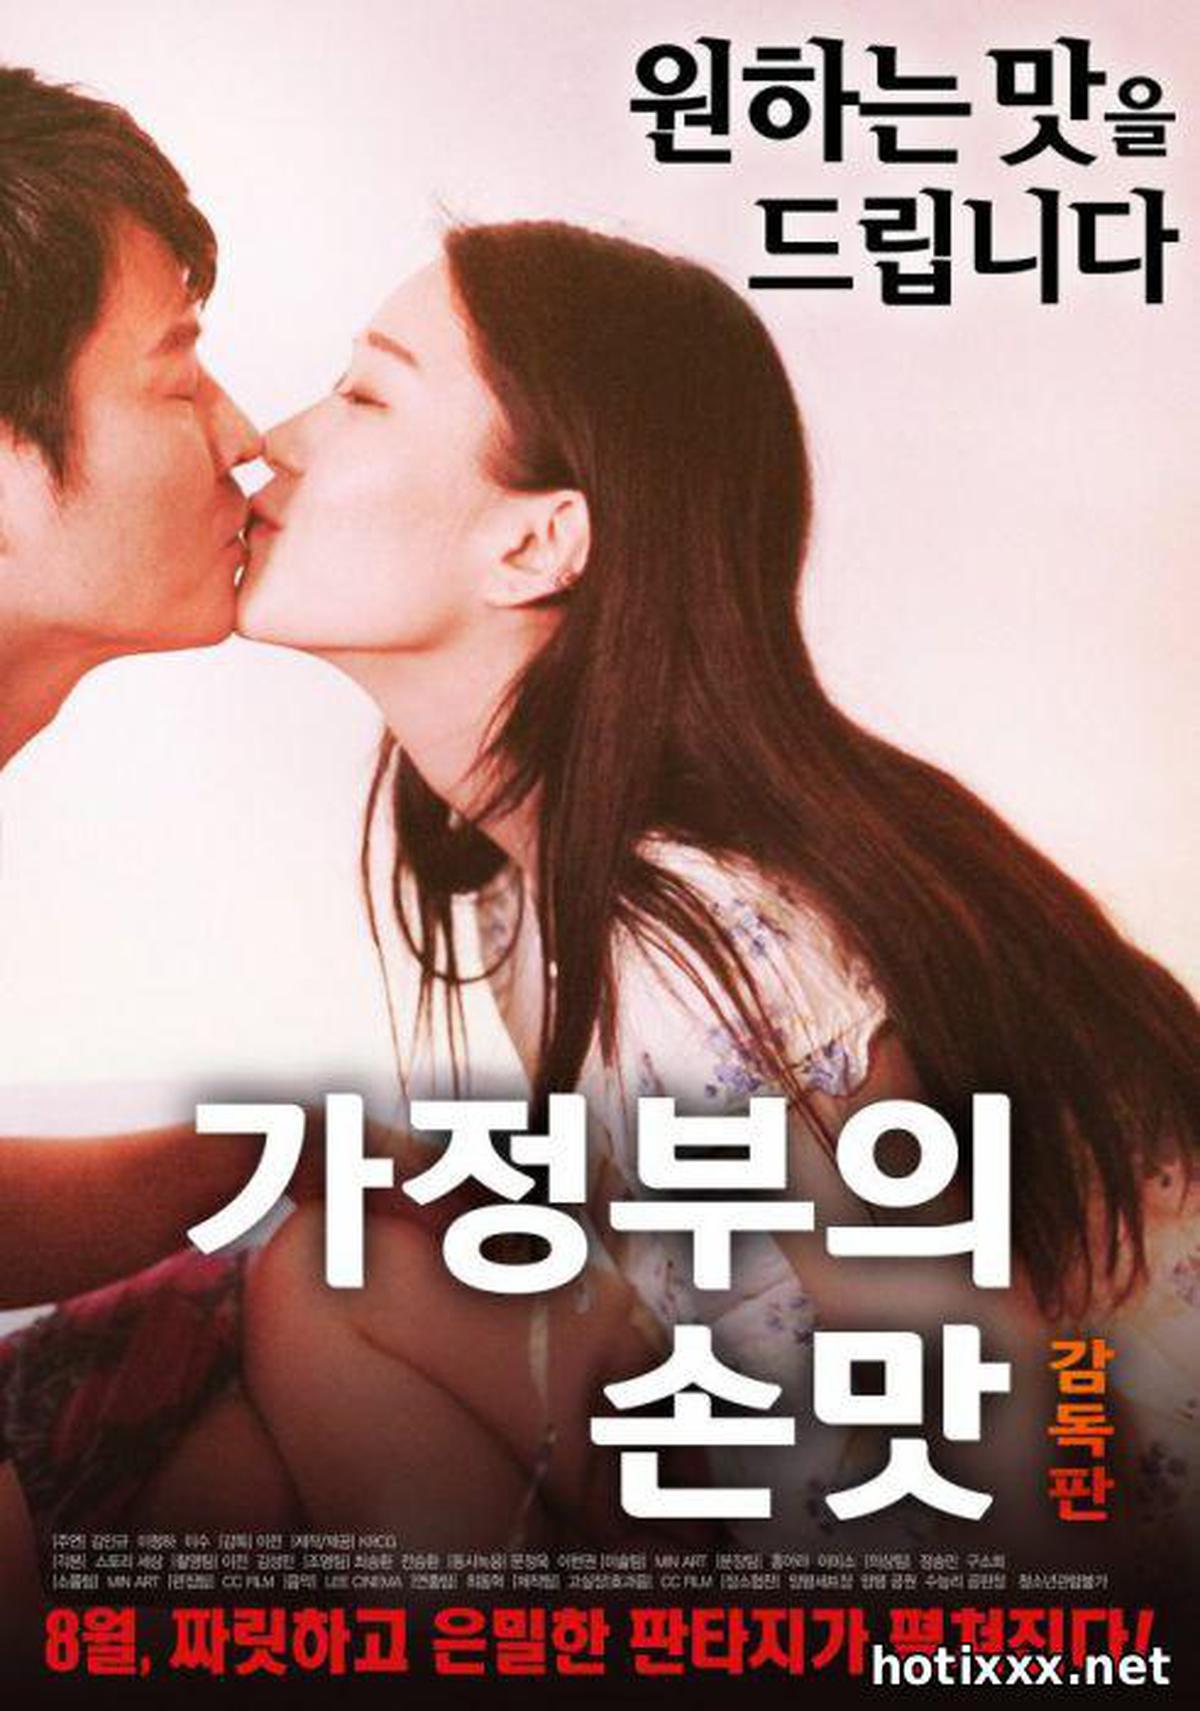 가정부의 손맛 감독판 / ga-jeong-bu-eui son-mat gam-dok-pan / The Maid’s Comfort Food – Director’s Cut (2017)